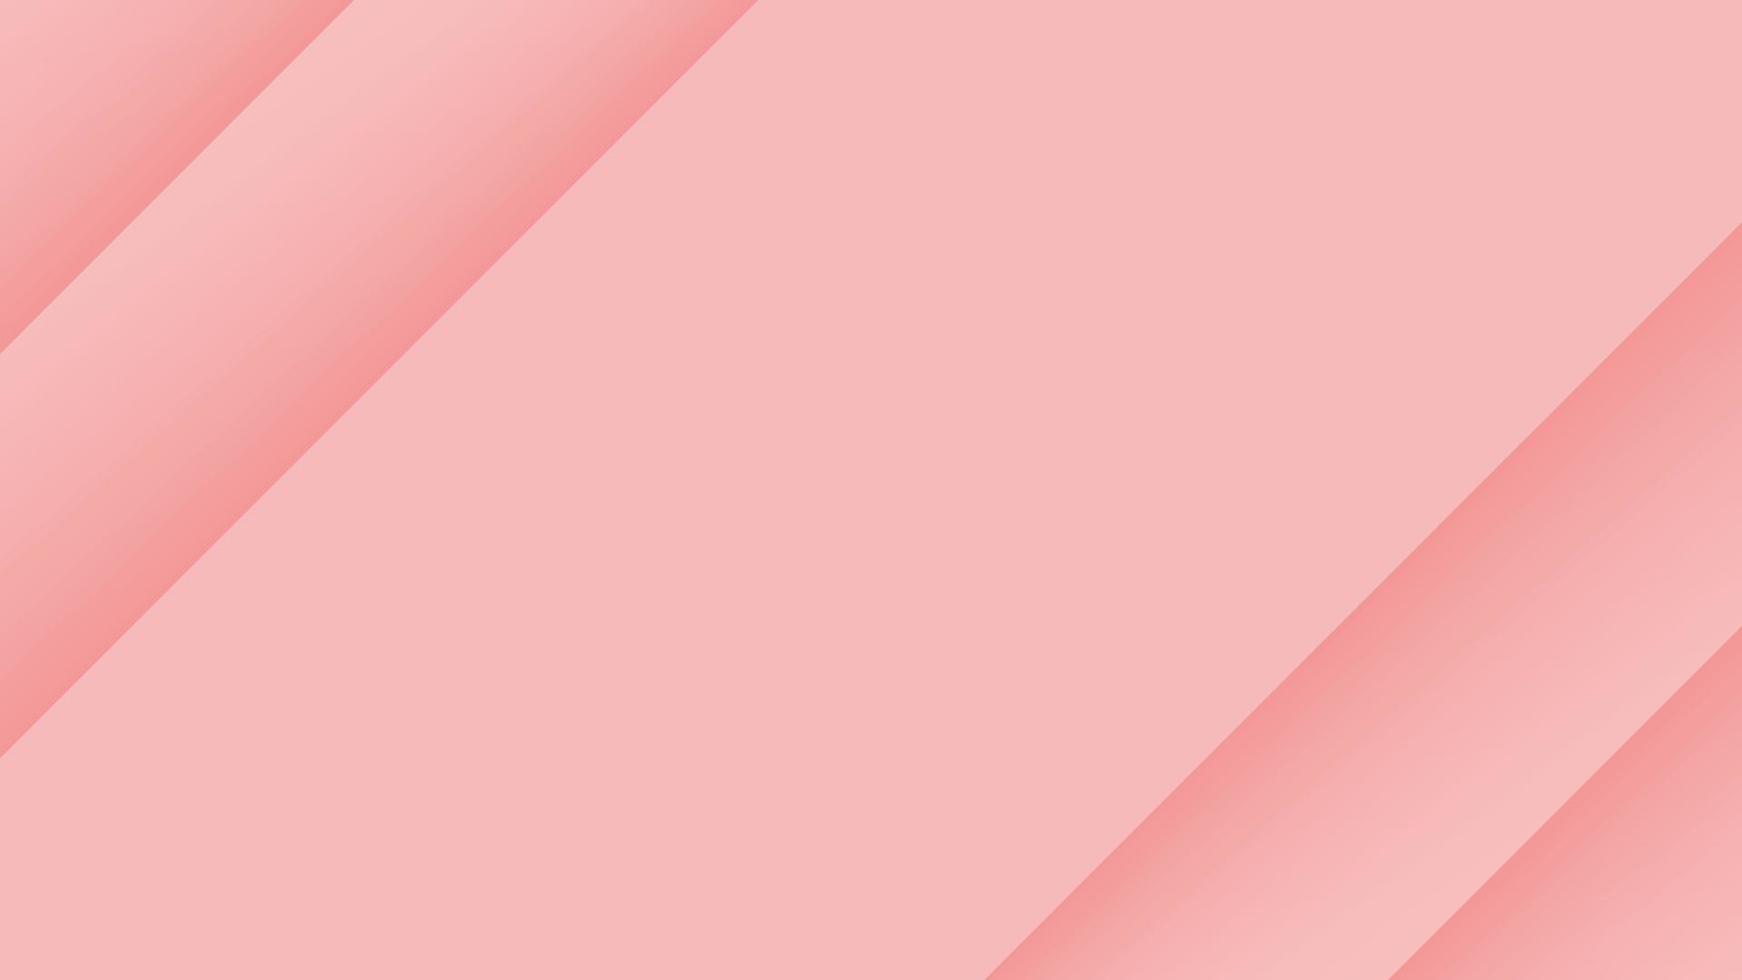 fondo rosa ilustración vectorial eps10 vector